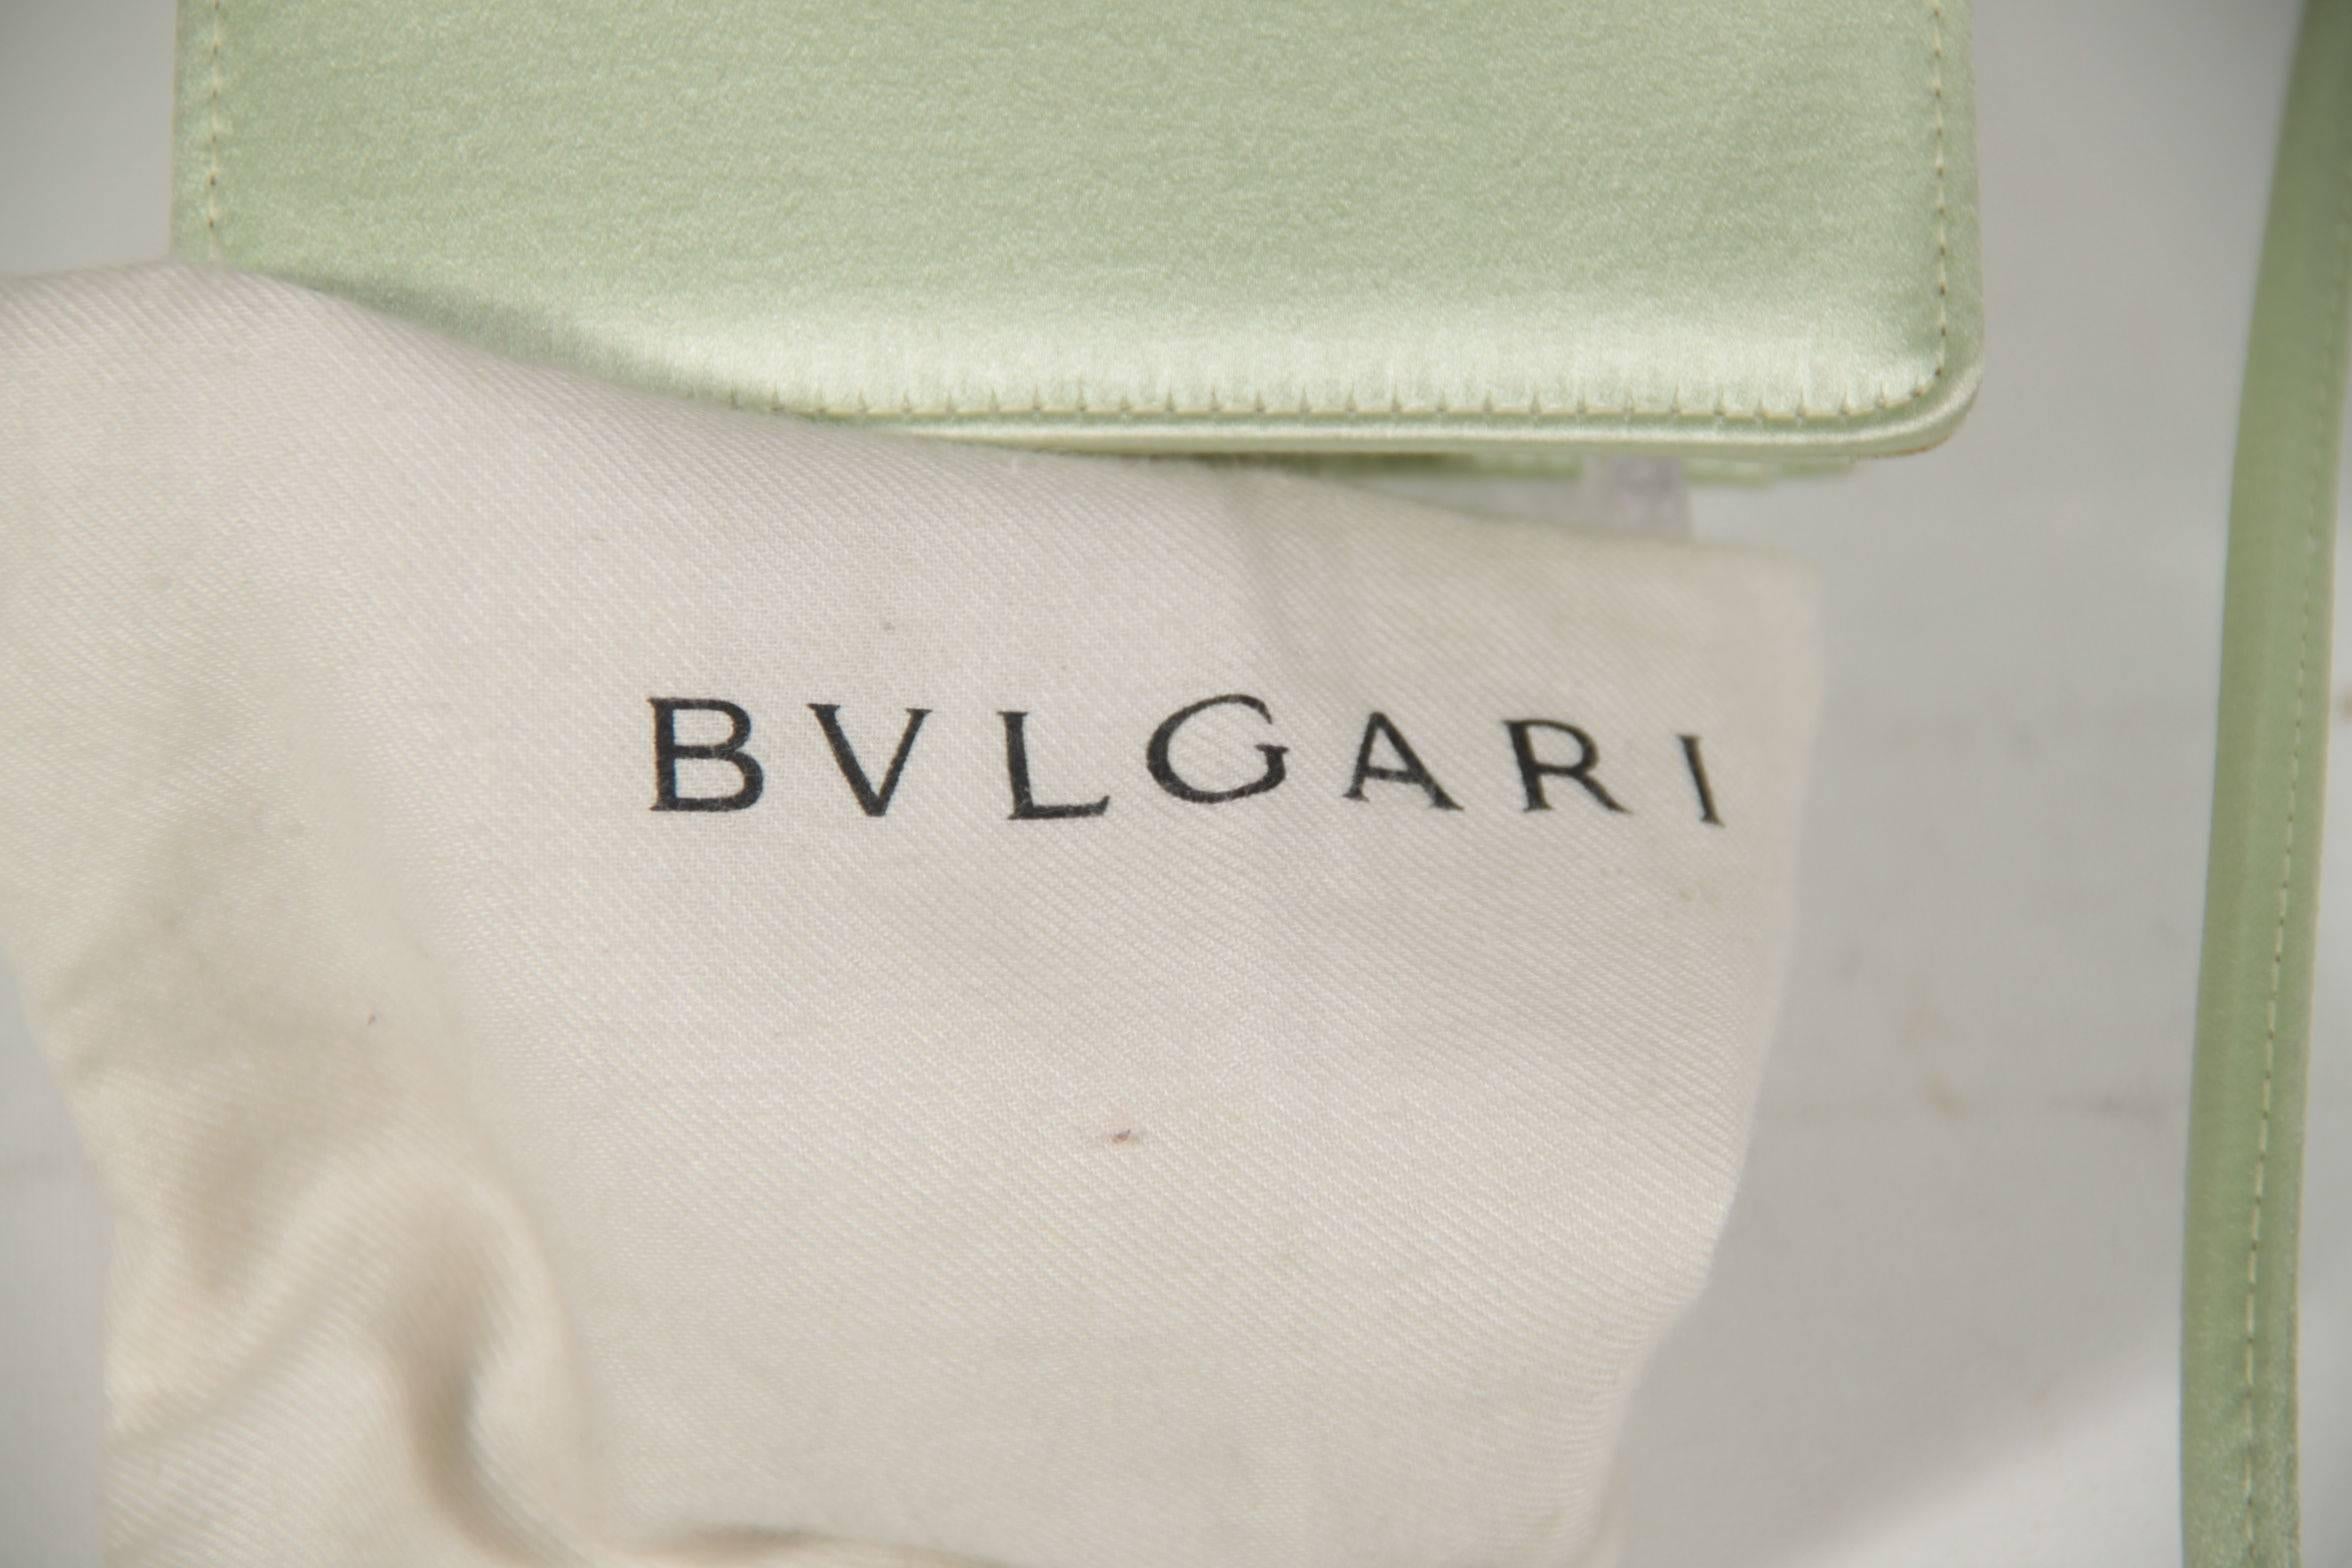 BULGARI BVLGARI Italian Light Green Satin MINI SHOULDER BAG Evening Bag PURSE 3